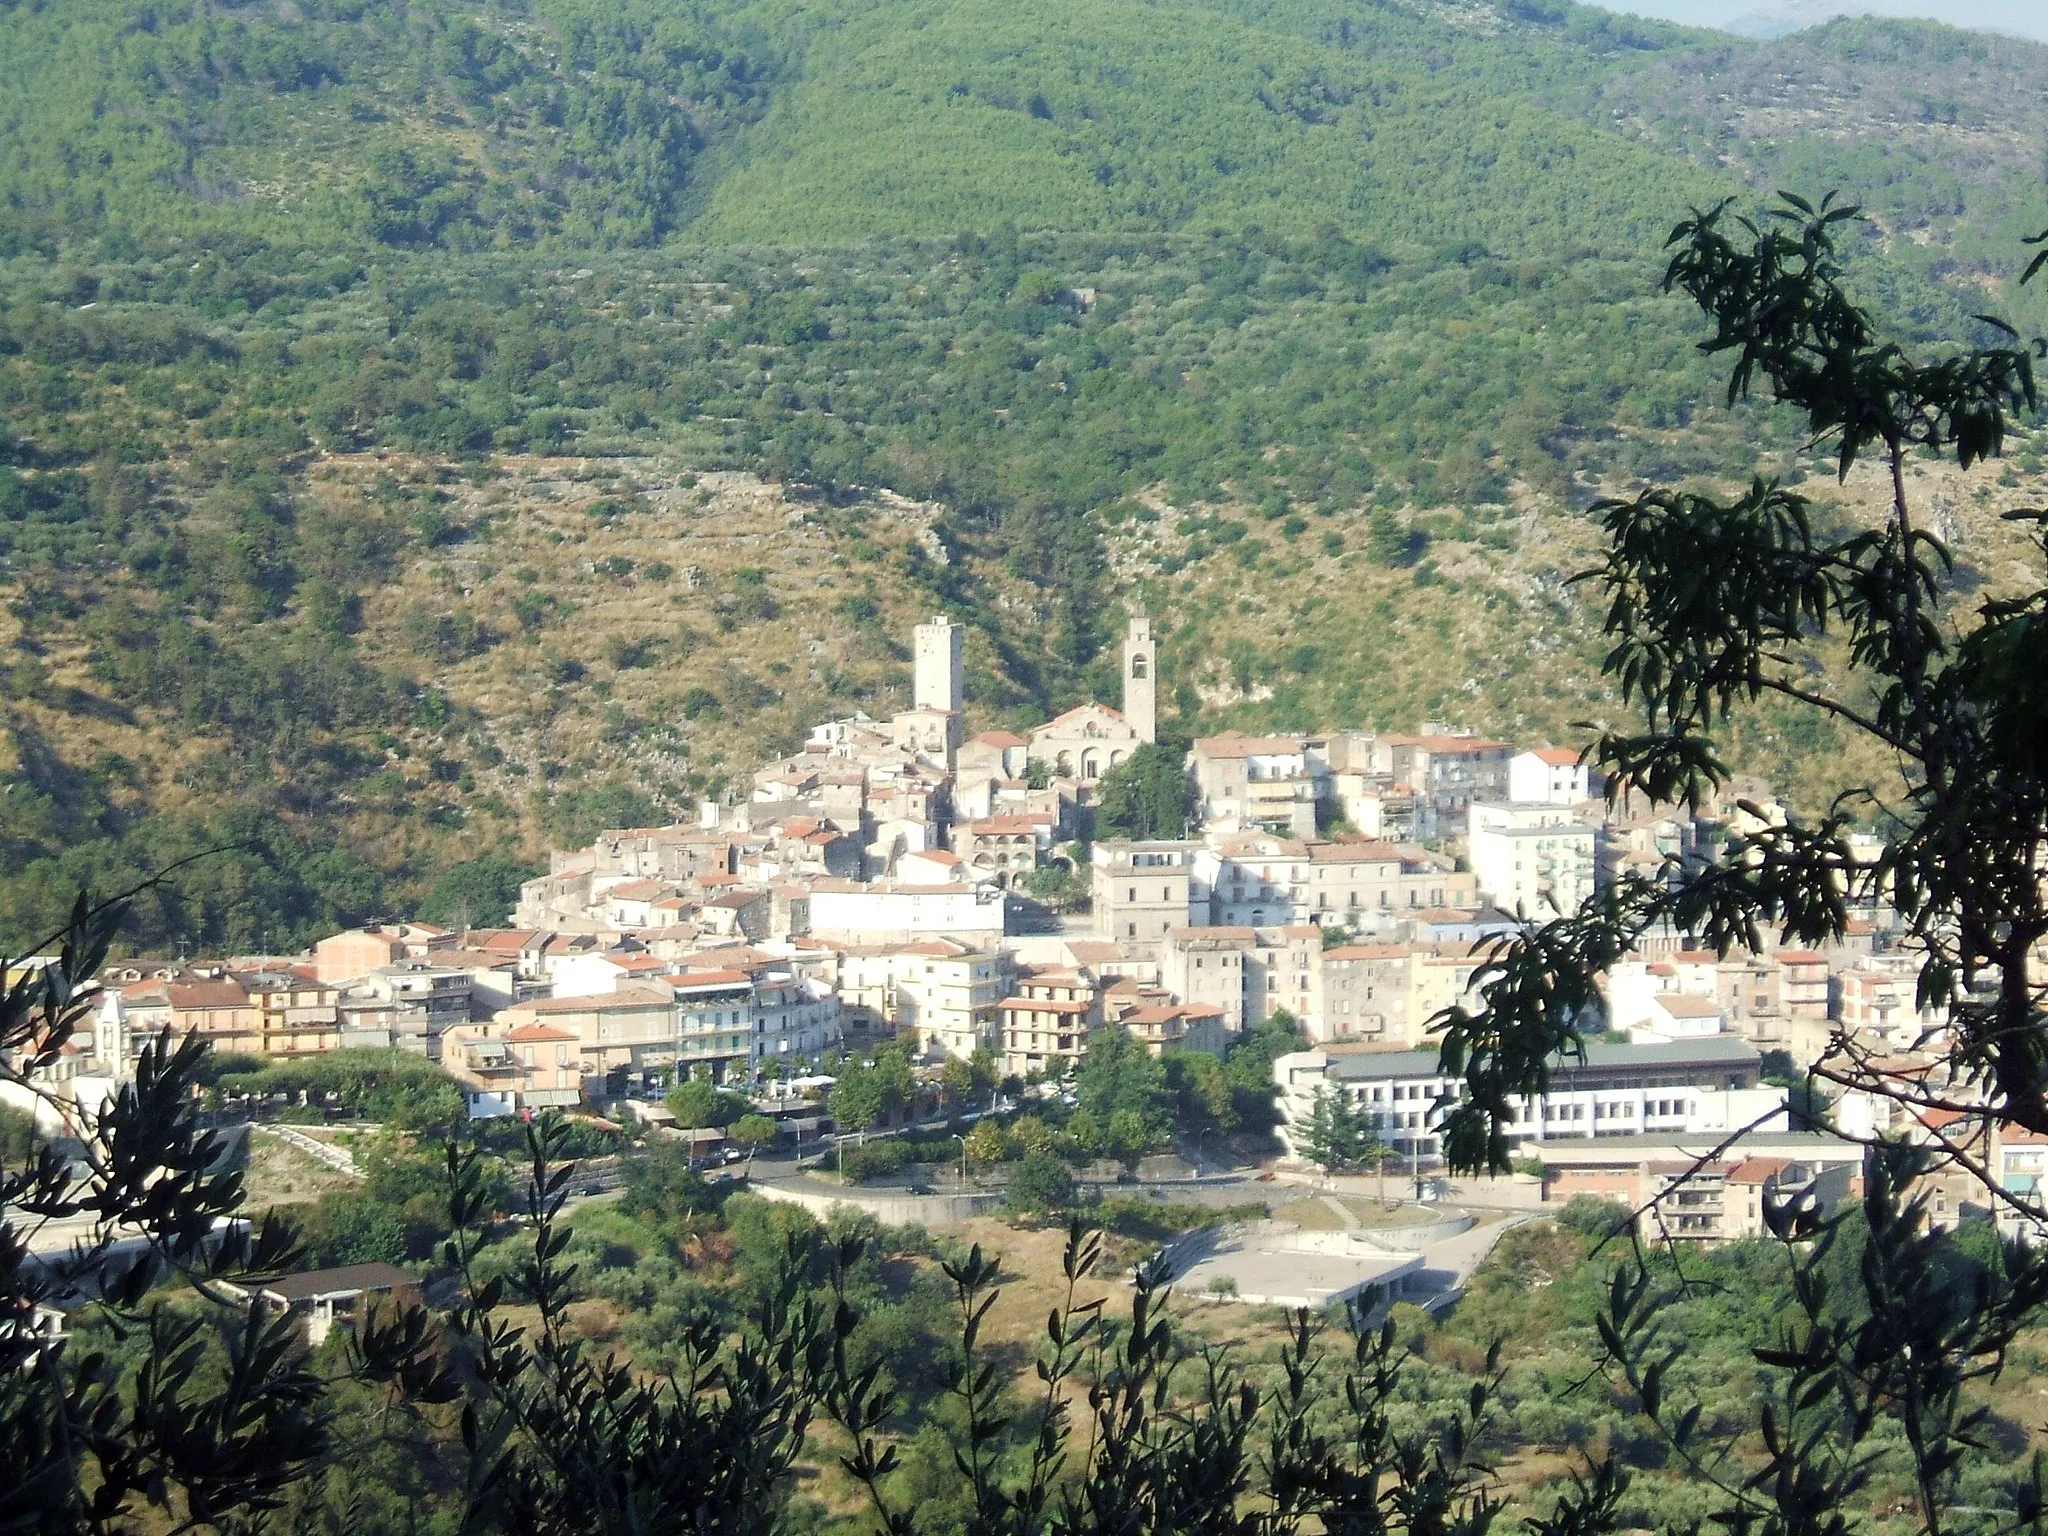 Image de Lazio